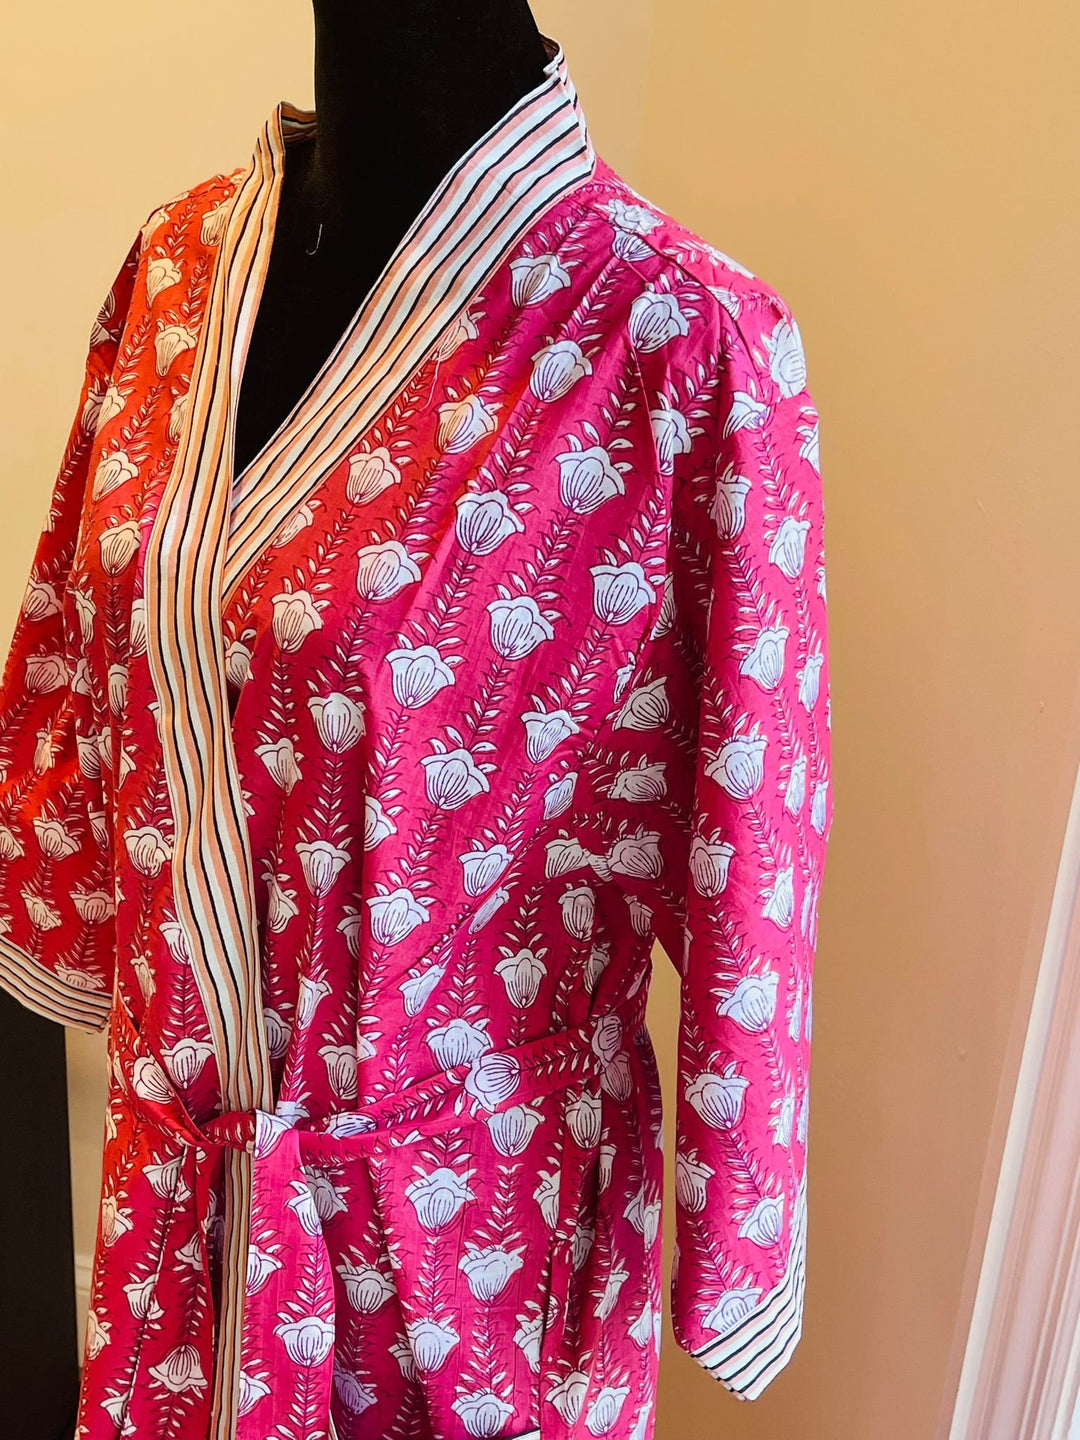 Cotton kimono robe